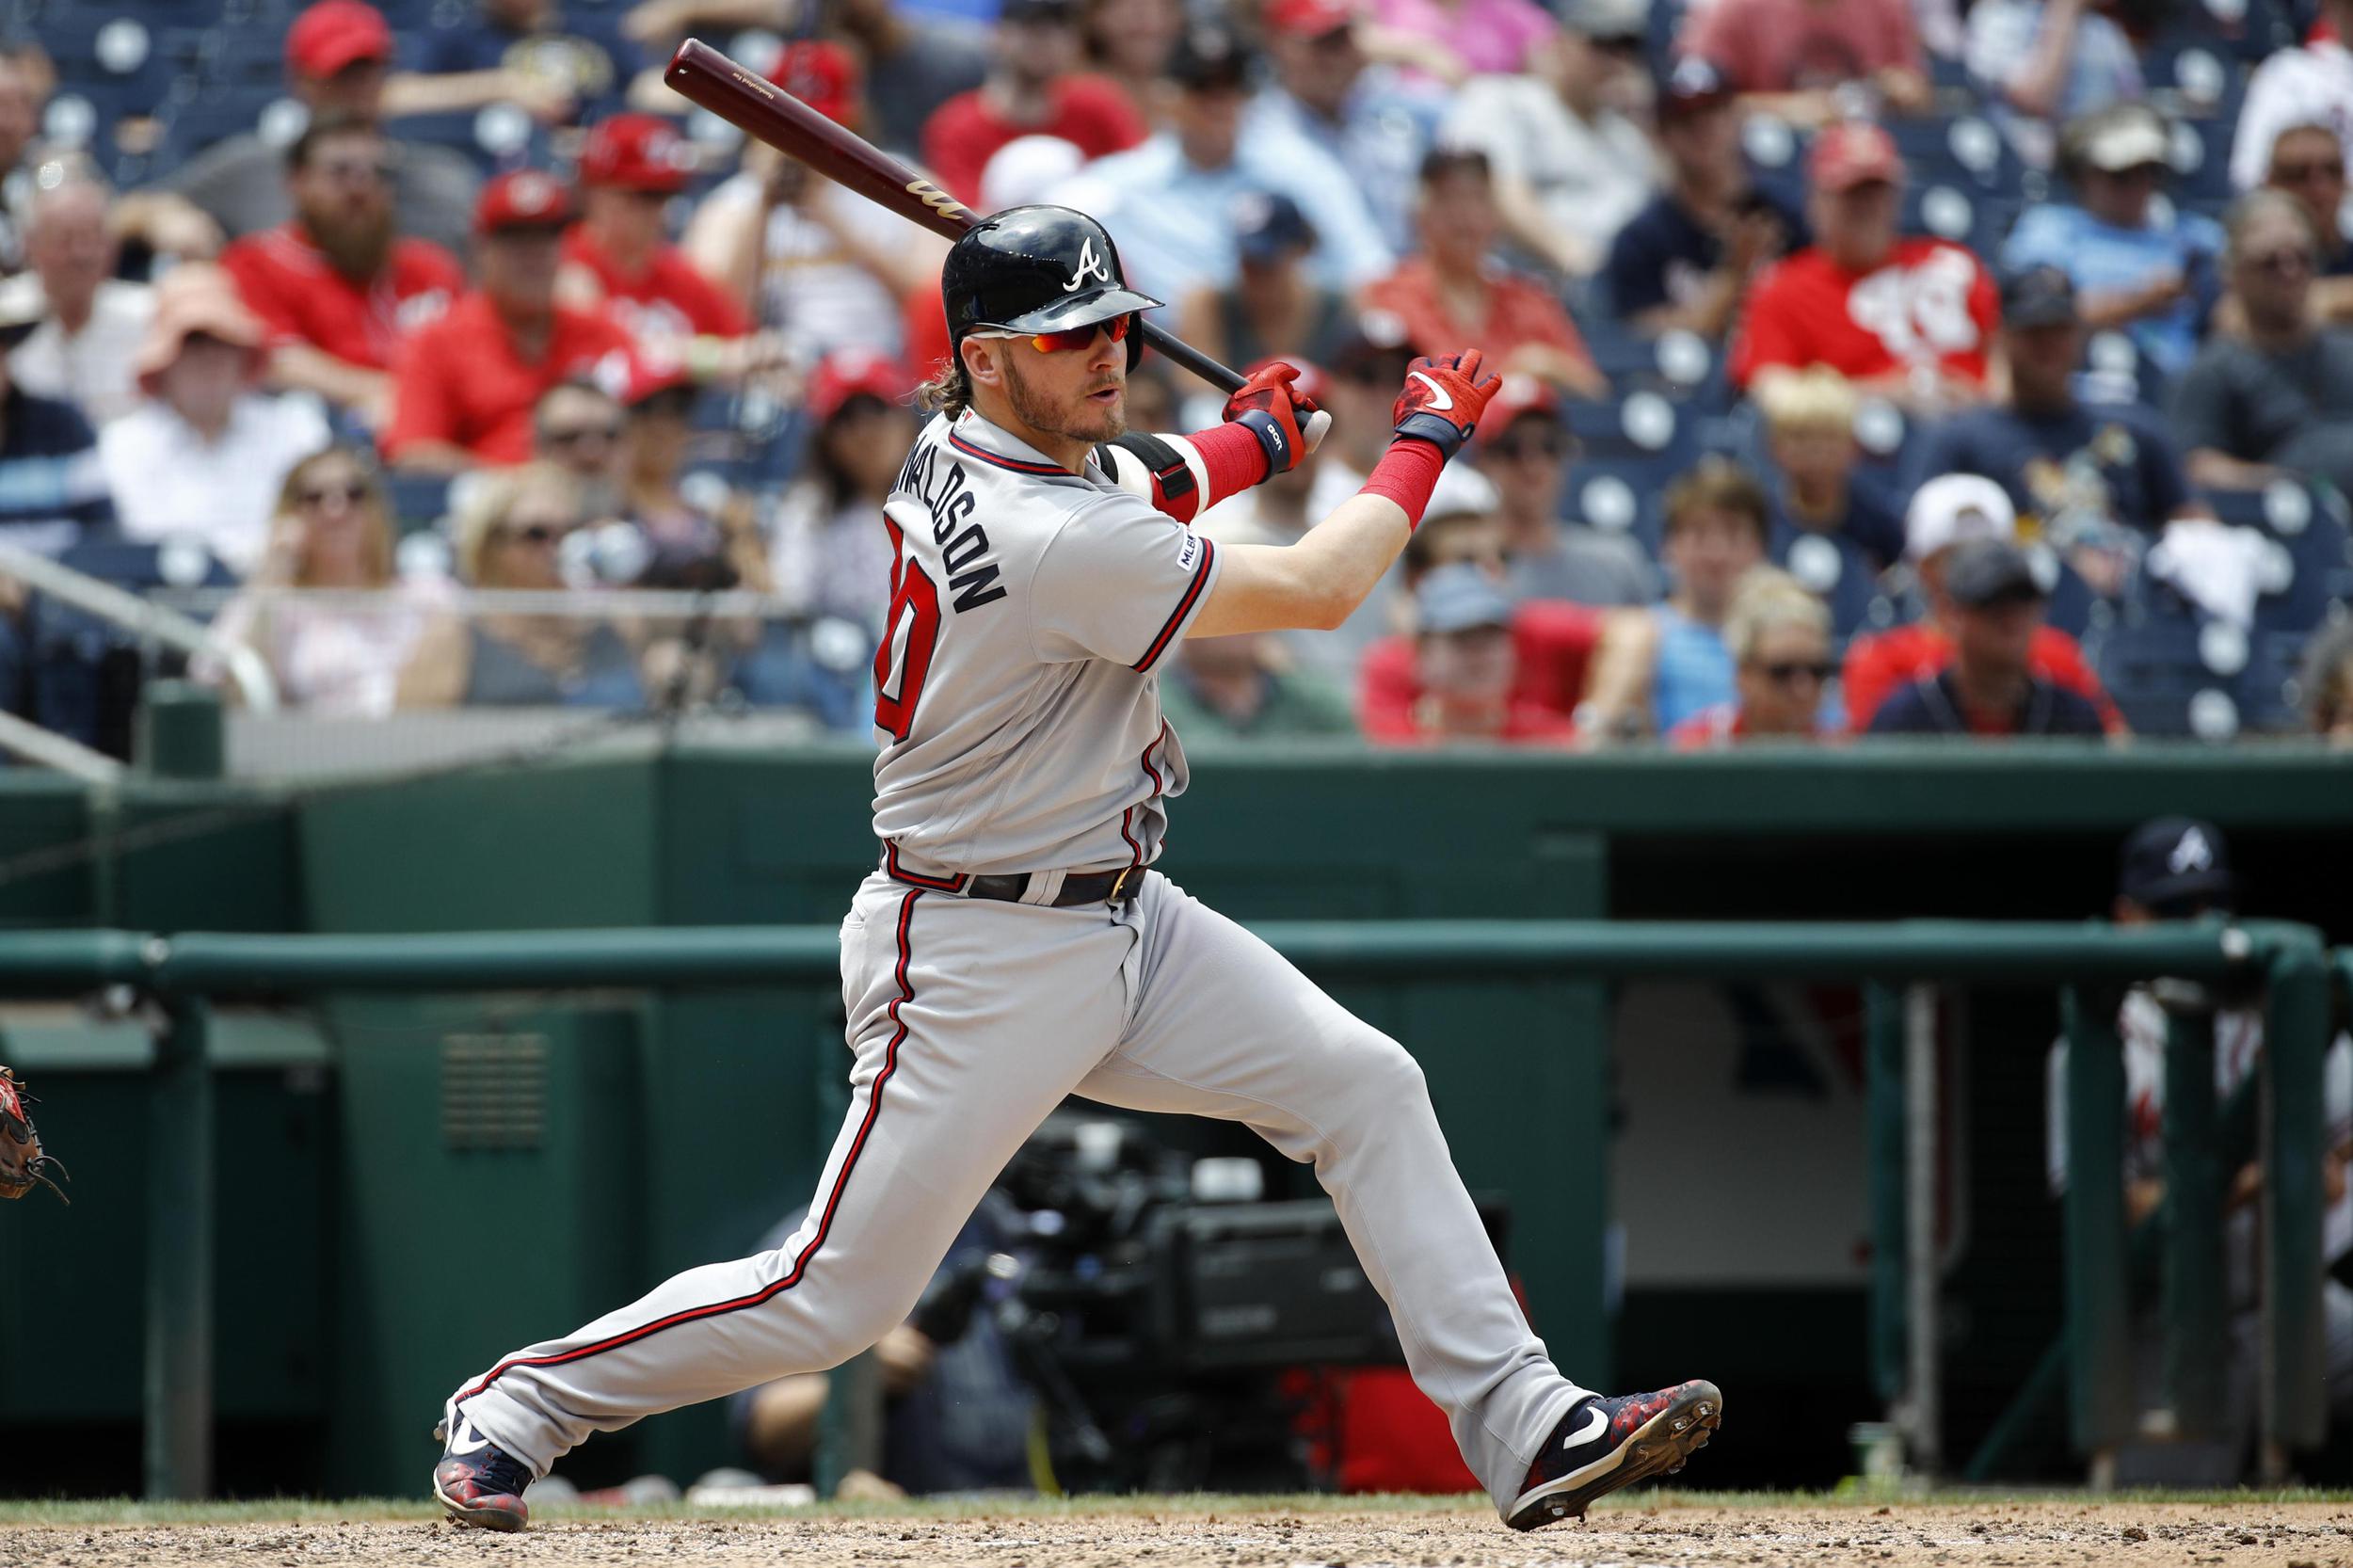 Josh Donaldson named starting AL 3rd baseman for MLB all-star game